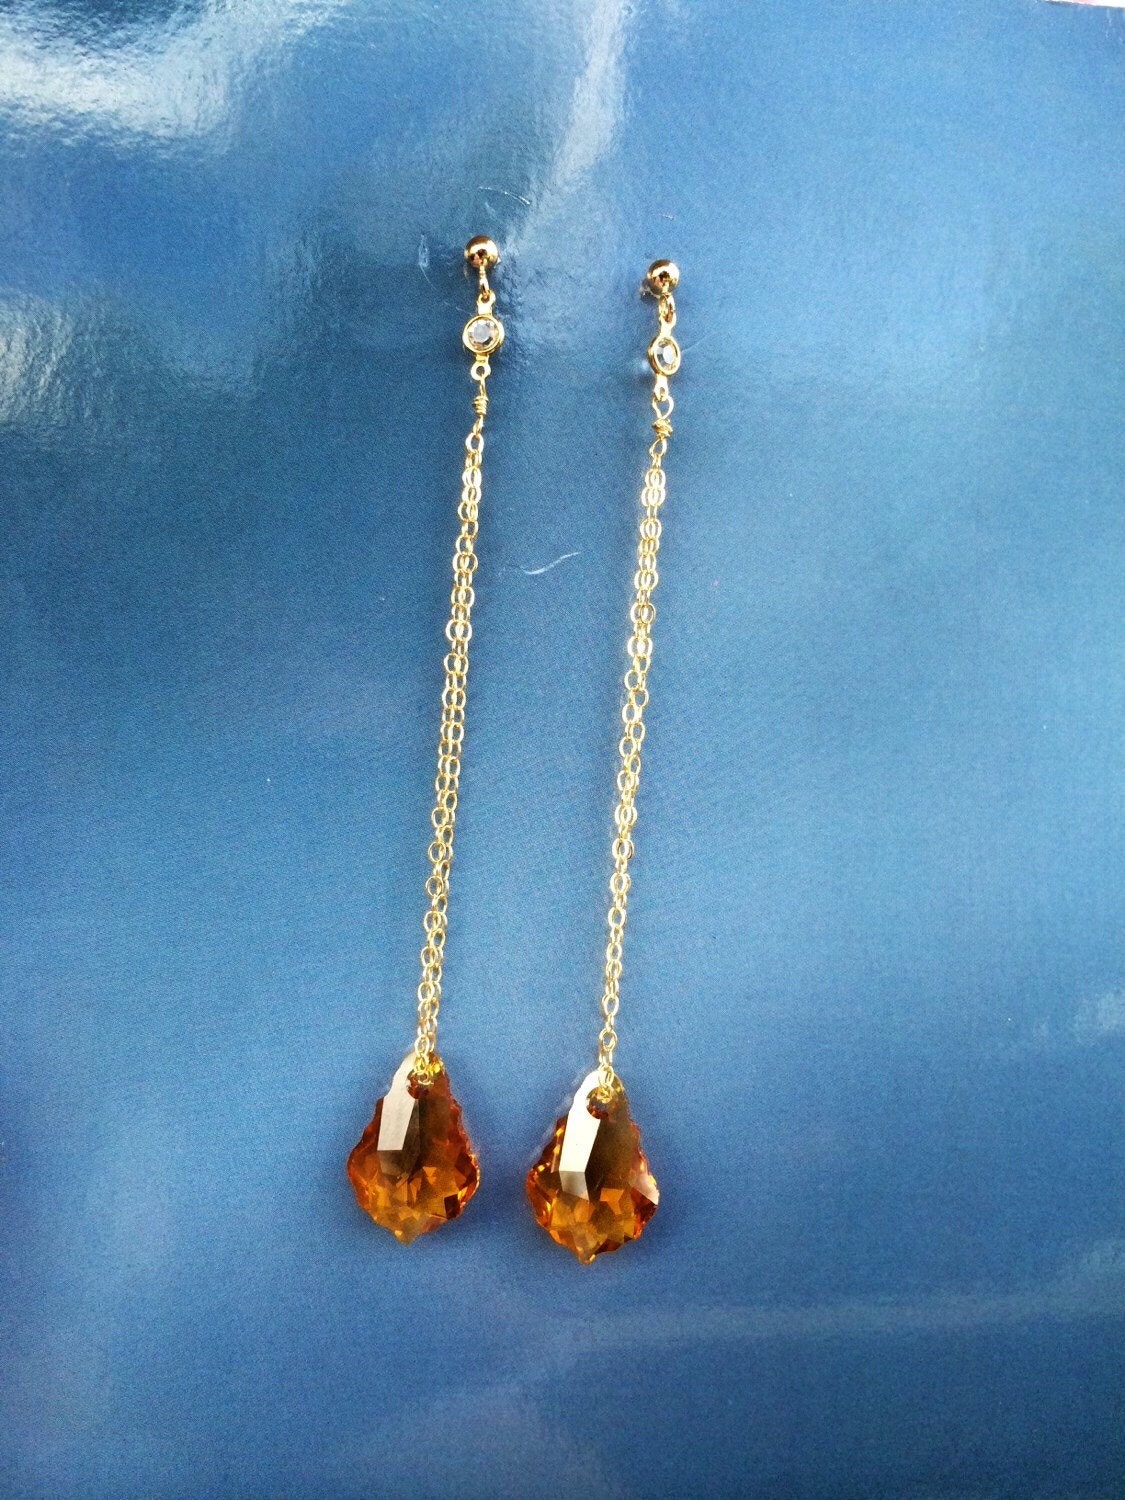 Swarovski Crystal Topaz Long Gold Earrings | Etsy